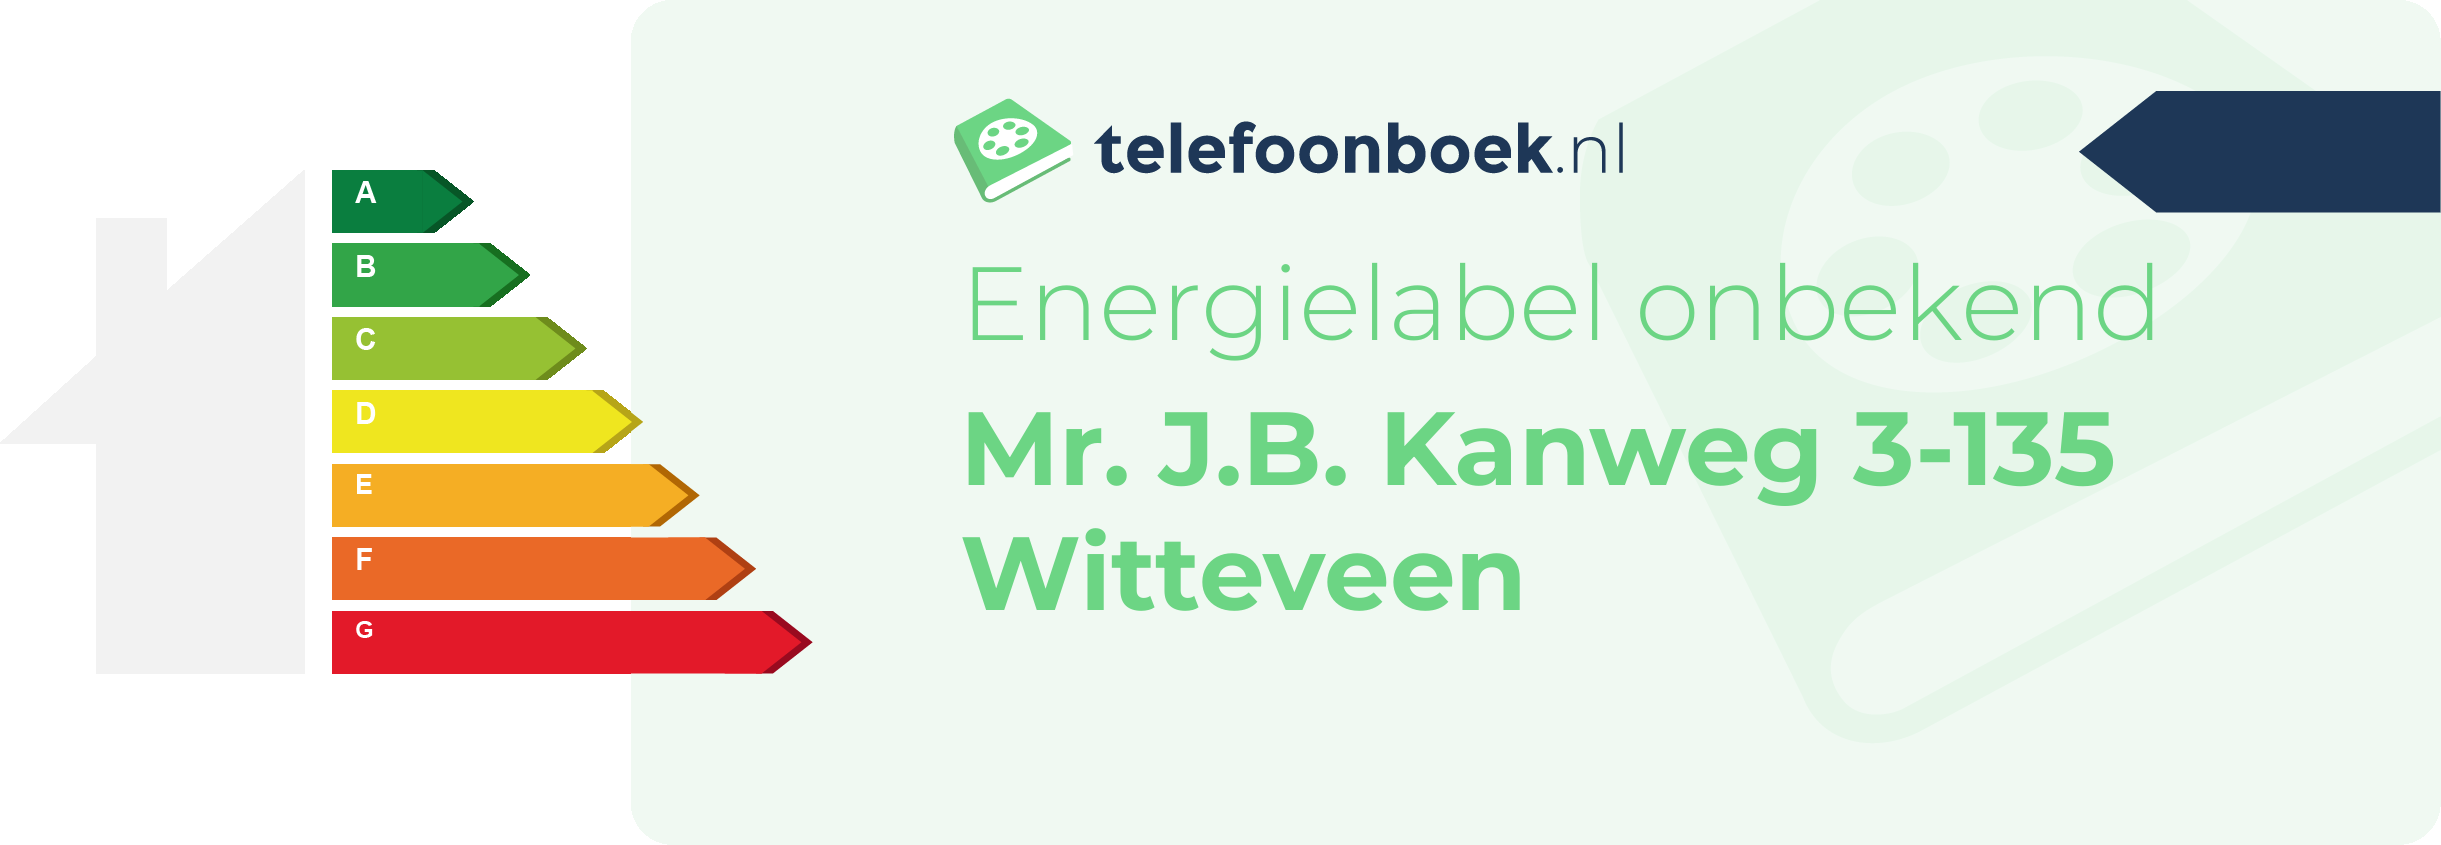 Energielabel Mr. J.B. Kanweg 3-135 Witteveen